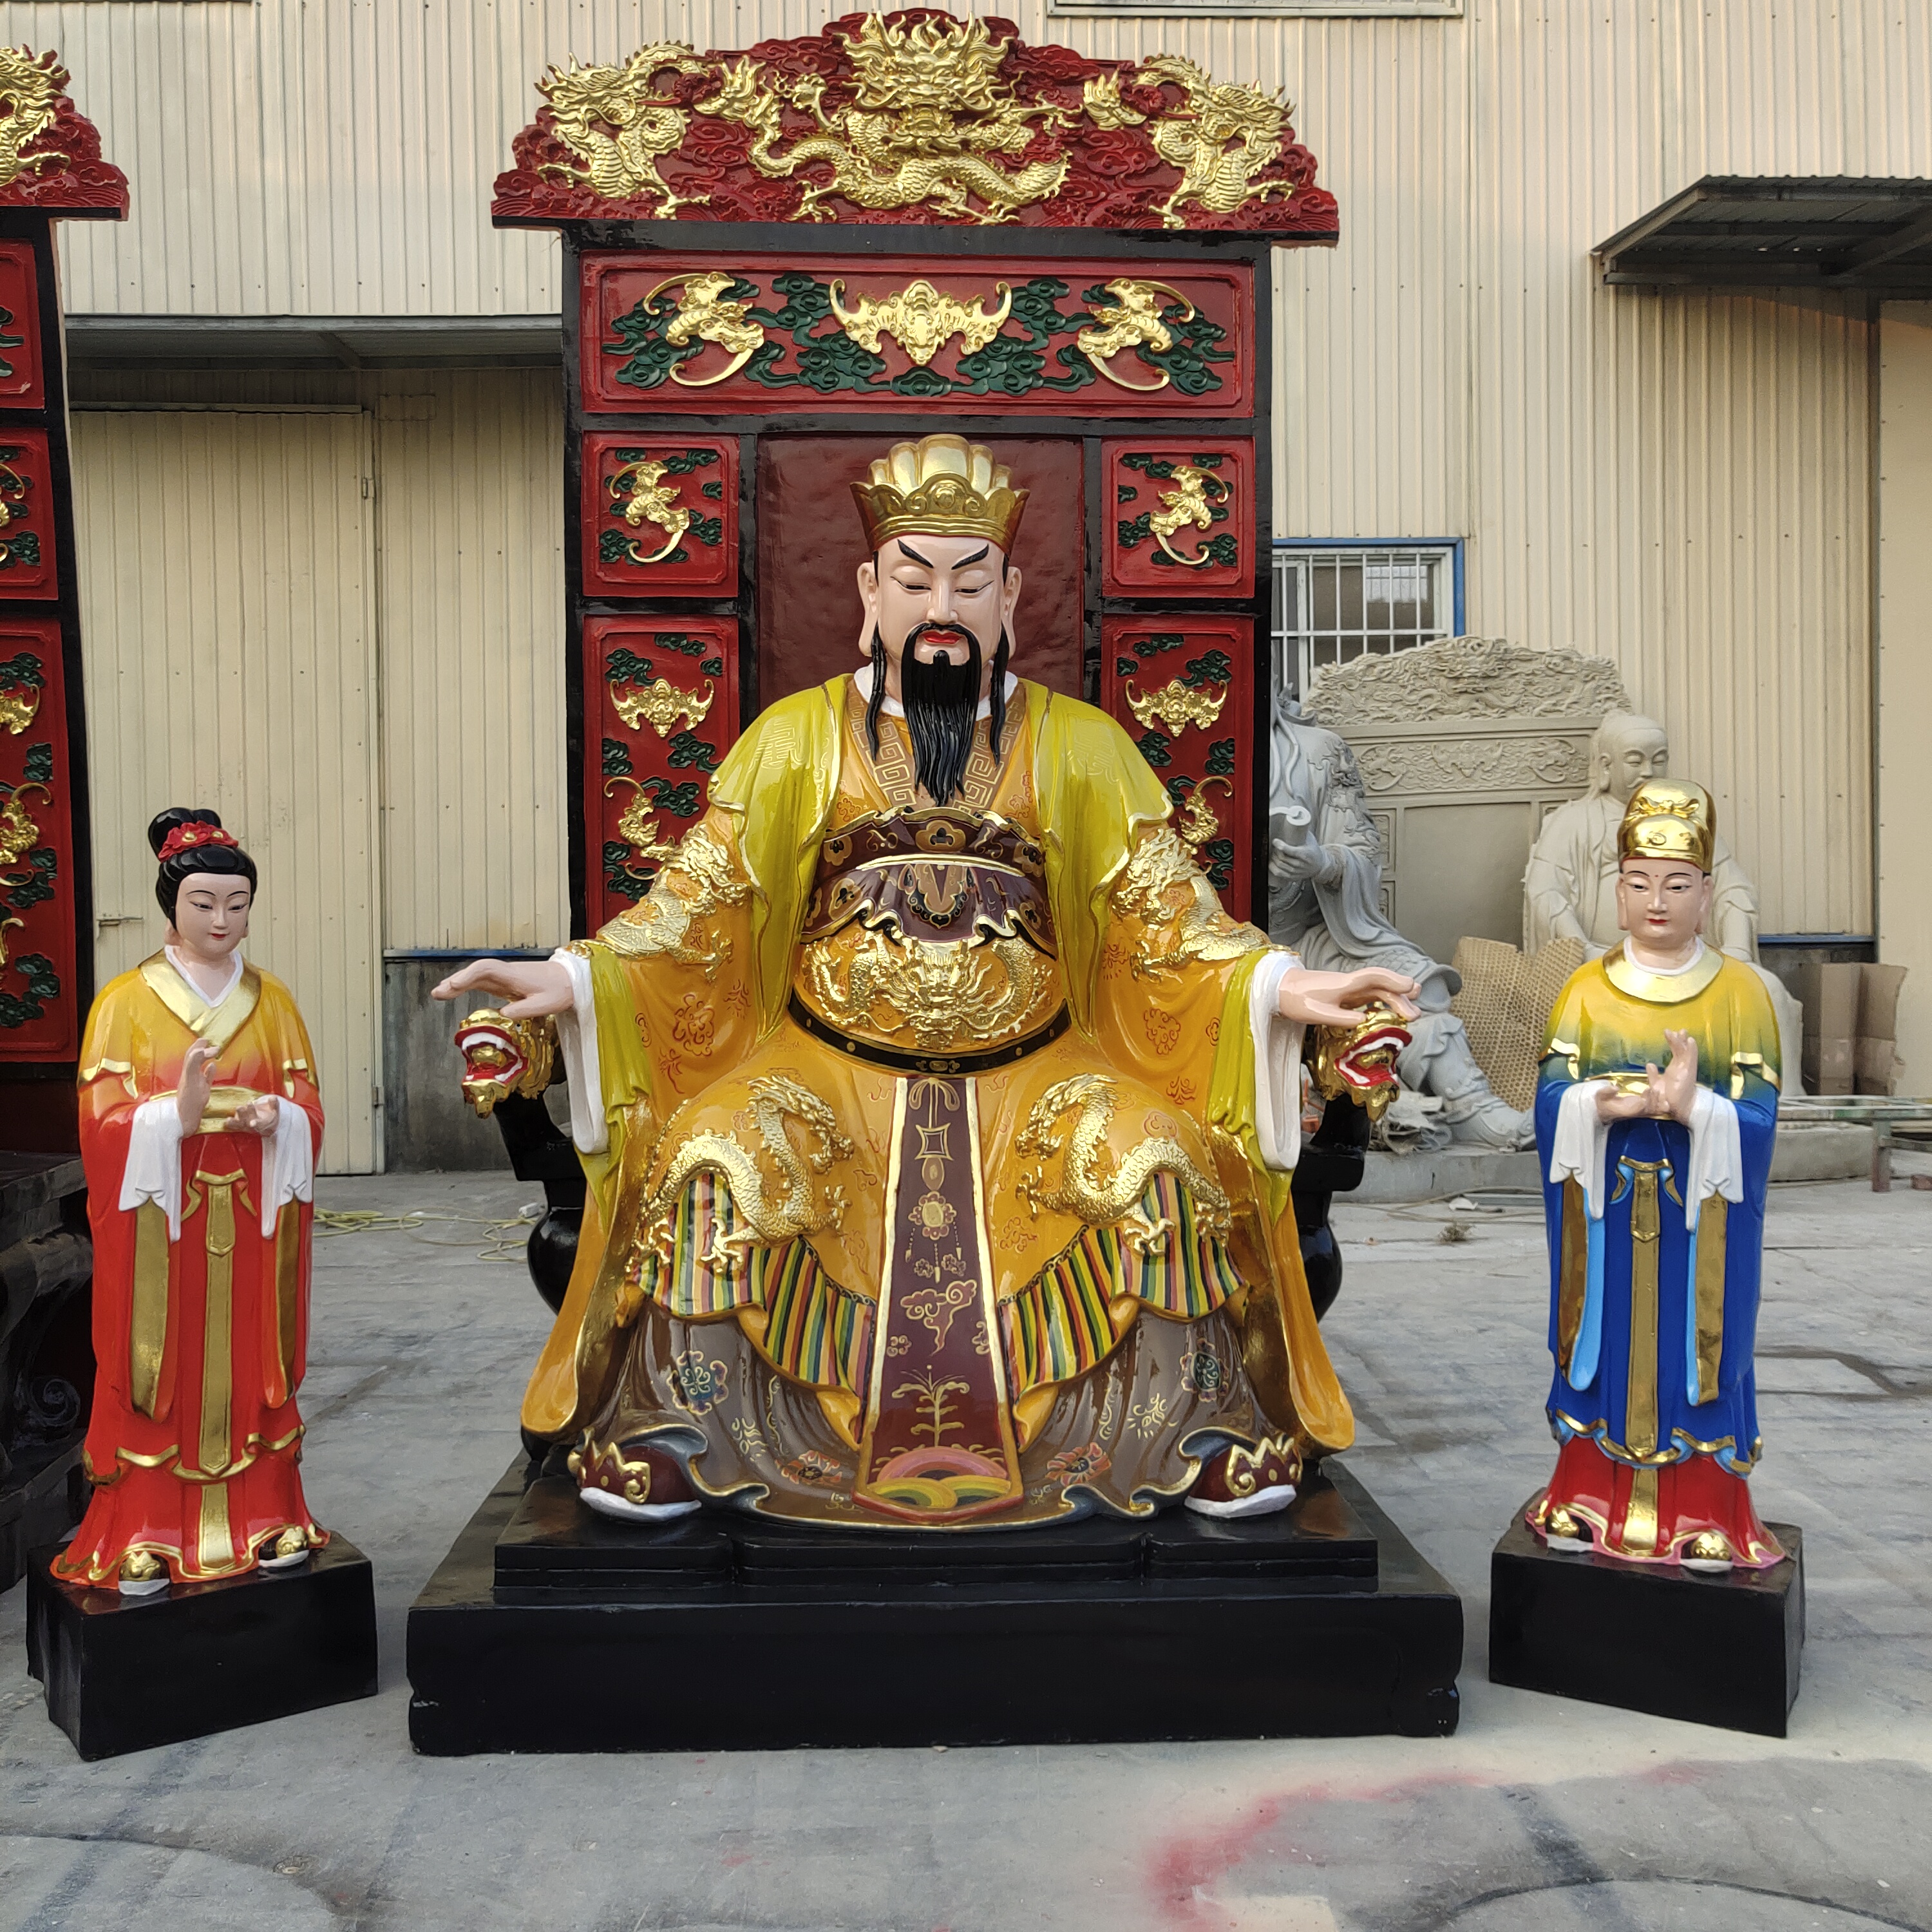 供应玉皇大帝坐像神像 玉帝神像带背光2.8米 手工彩绘玻璃钢材质佛像摆件